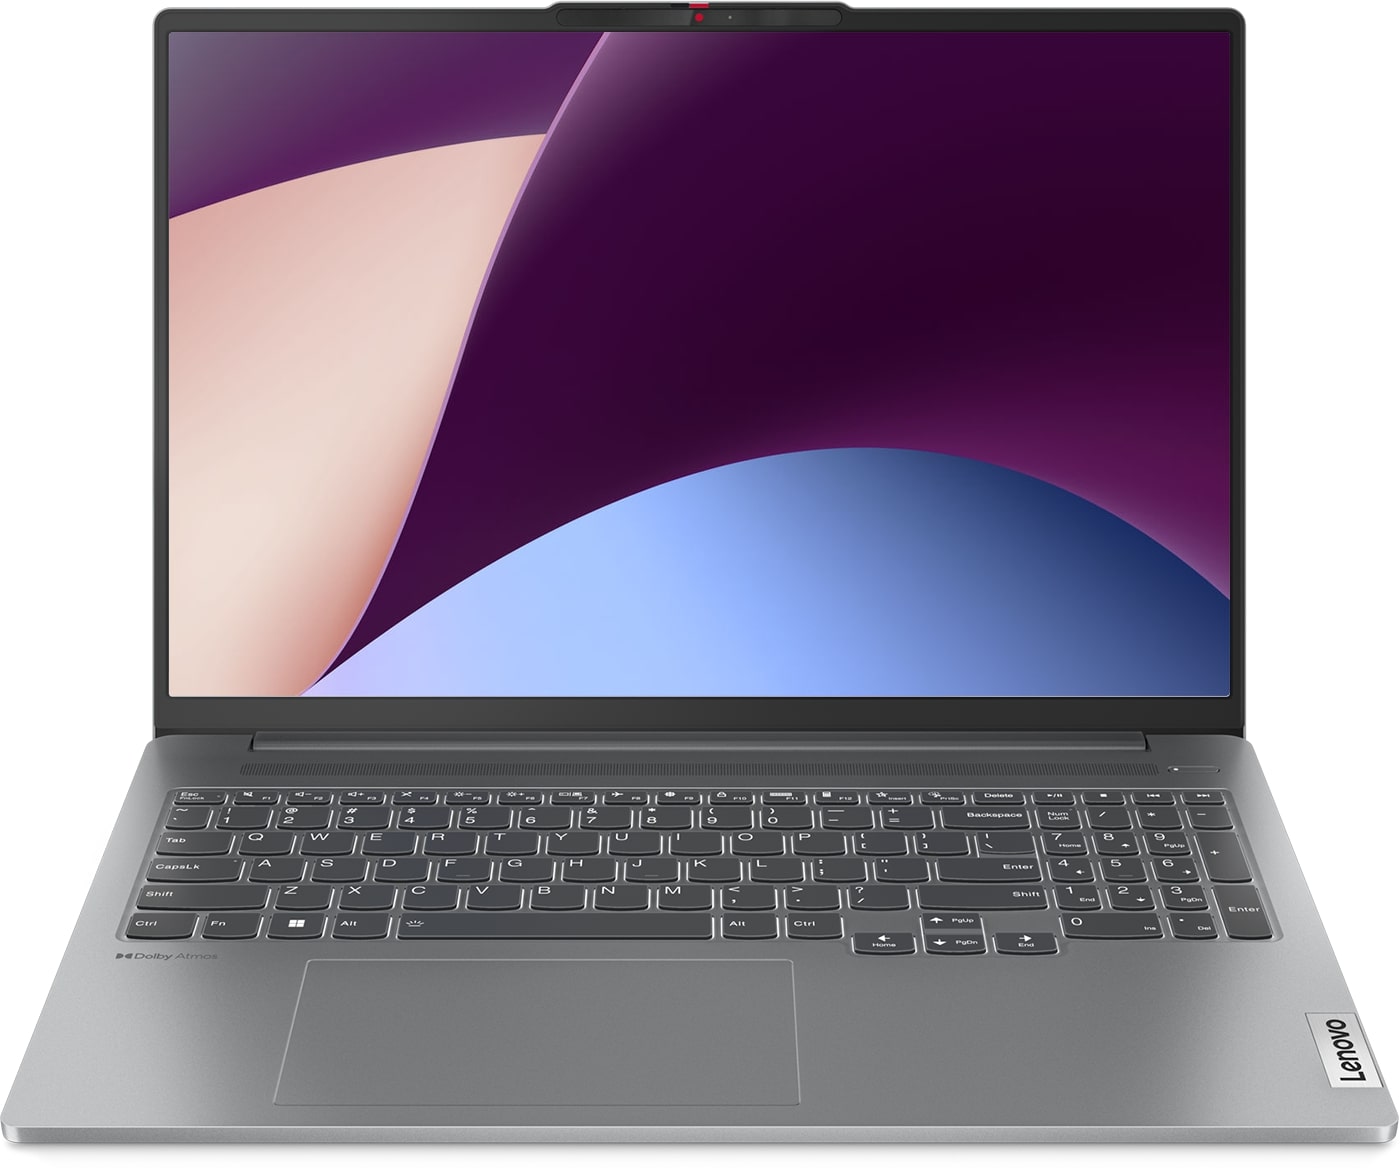 Ноутбук Lenovo IdeaPad Pro 5 Gen 8 Gray (83AS0008RK), купить в Москве, цены в интернет-магазинах на Мегамаркет